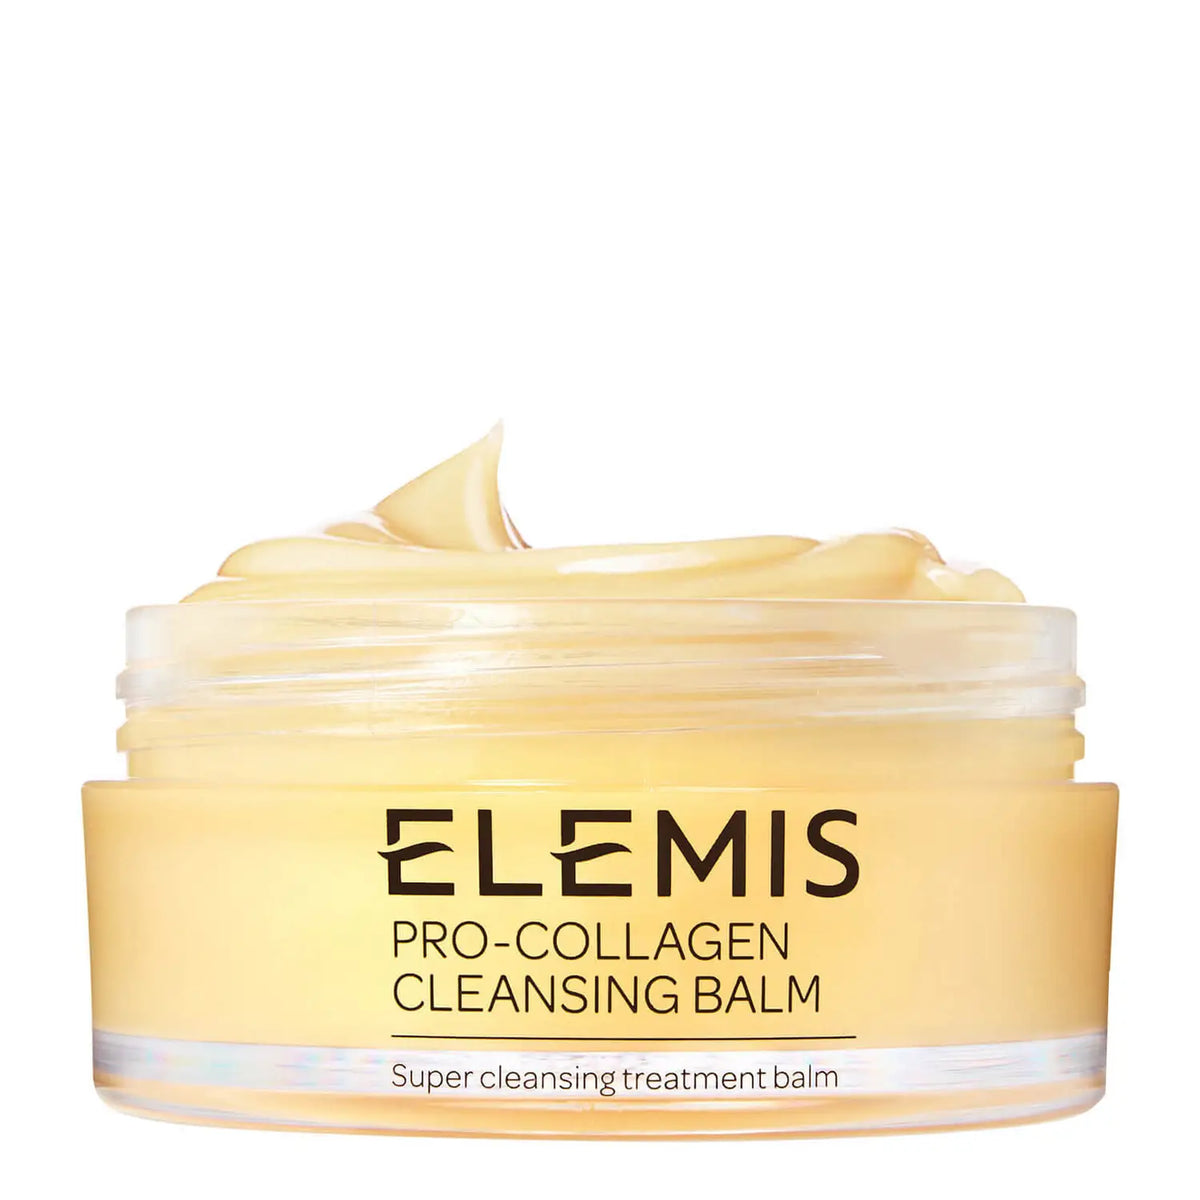 Elemis Pro Collagen Cleansing Balm 100g